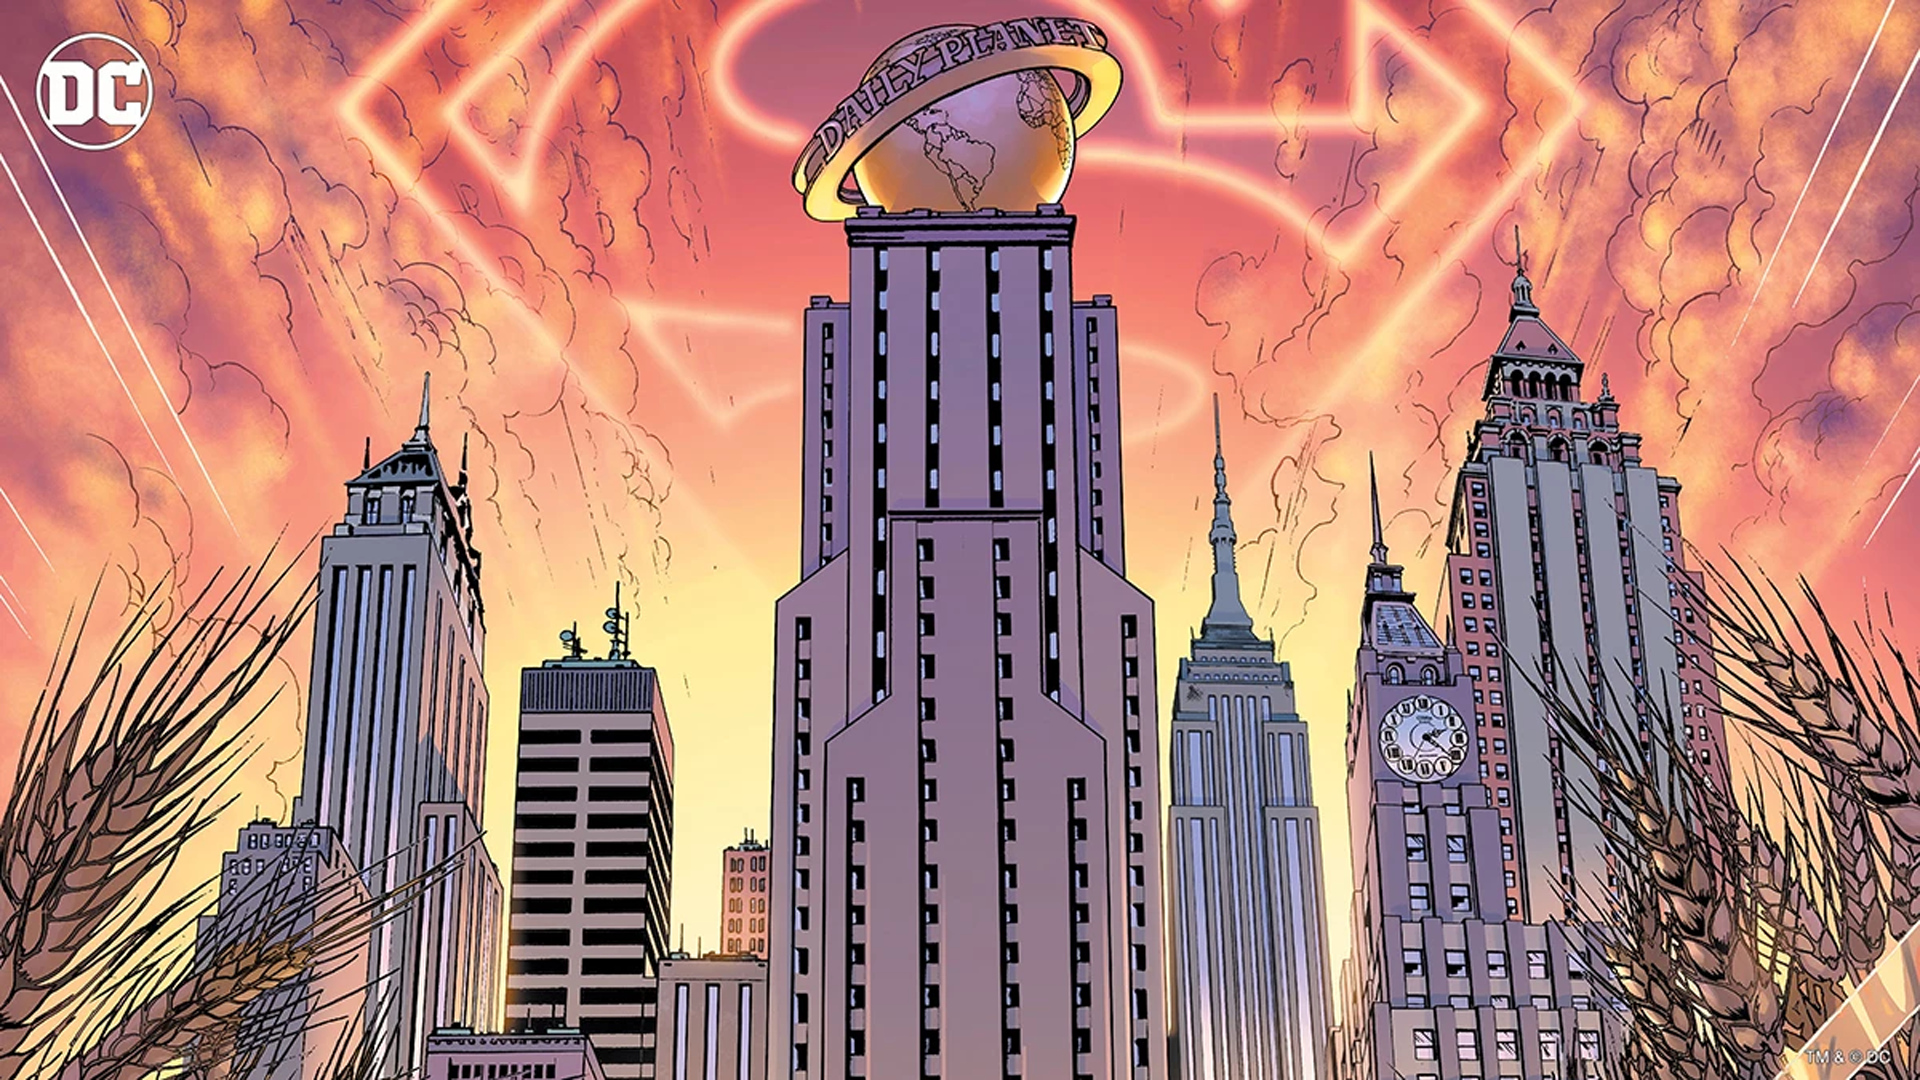 General 1920x1080 DC Comics Gotham City metropolis  Justice League